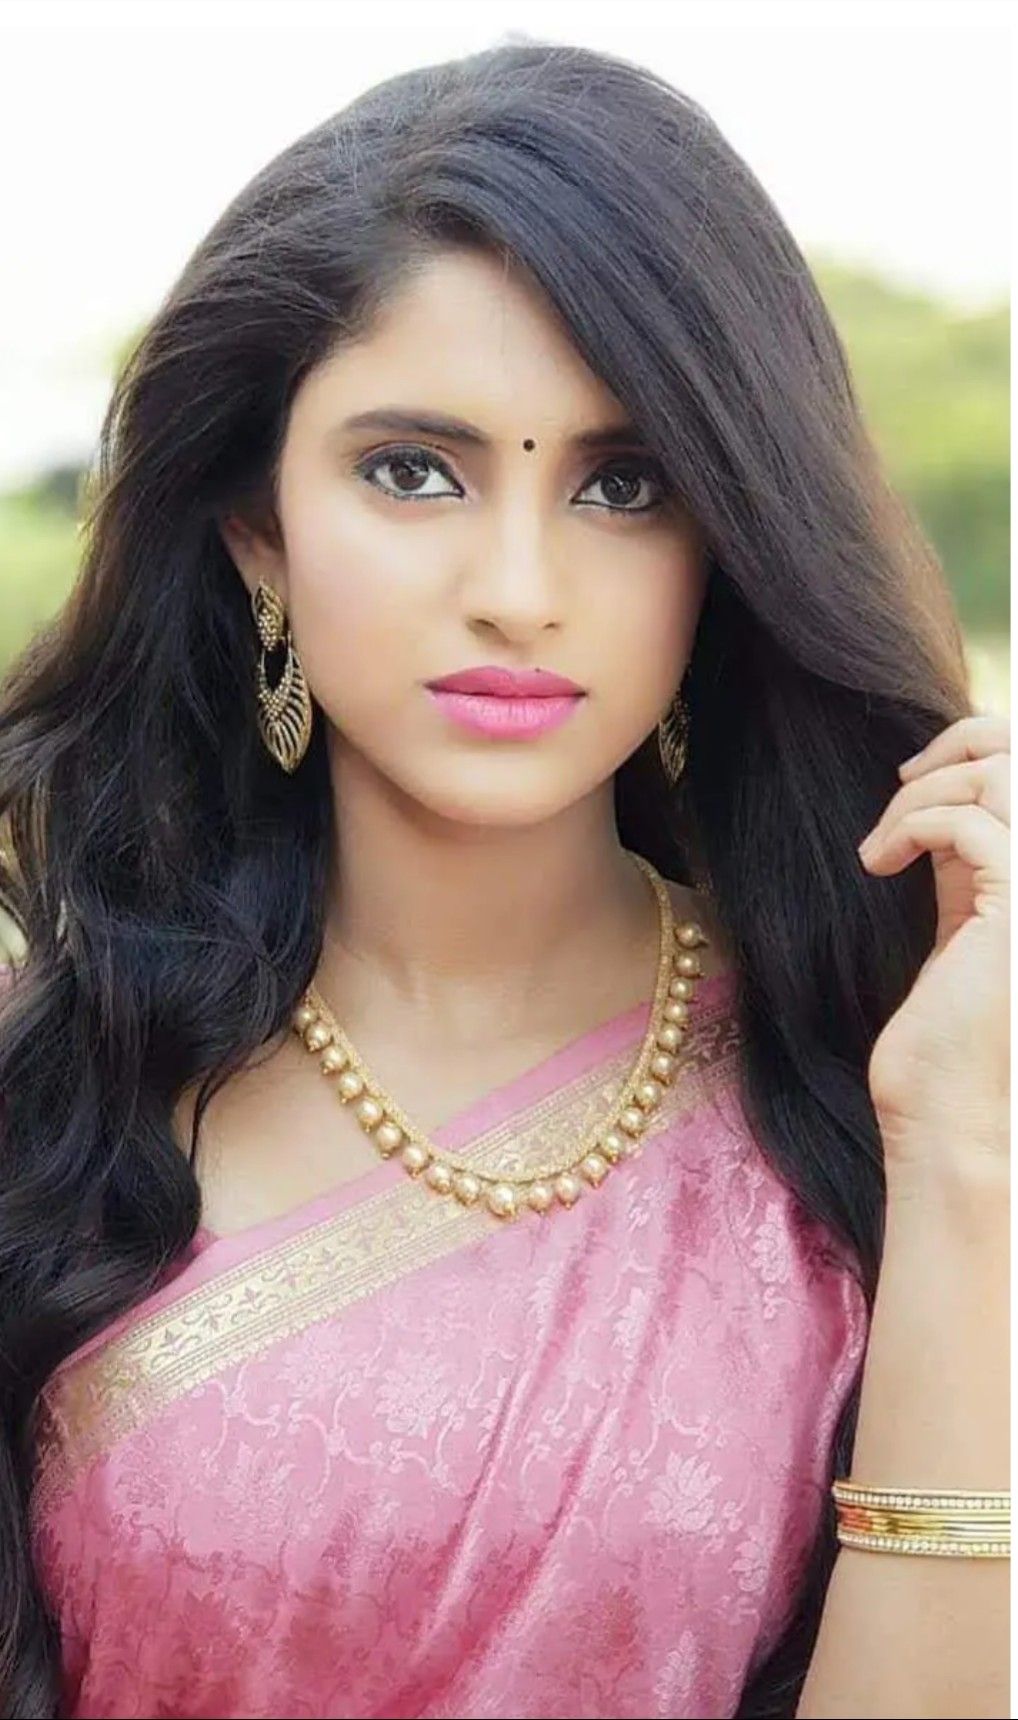 Beauty Beautiful Indian Women 1018x1720 Wallpaper